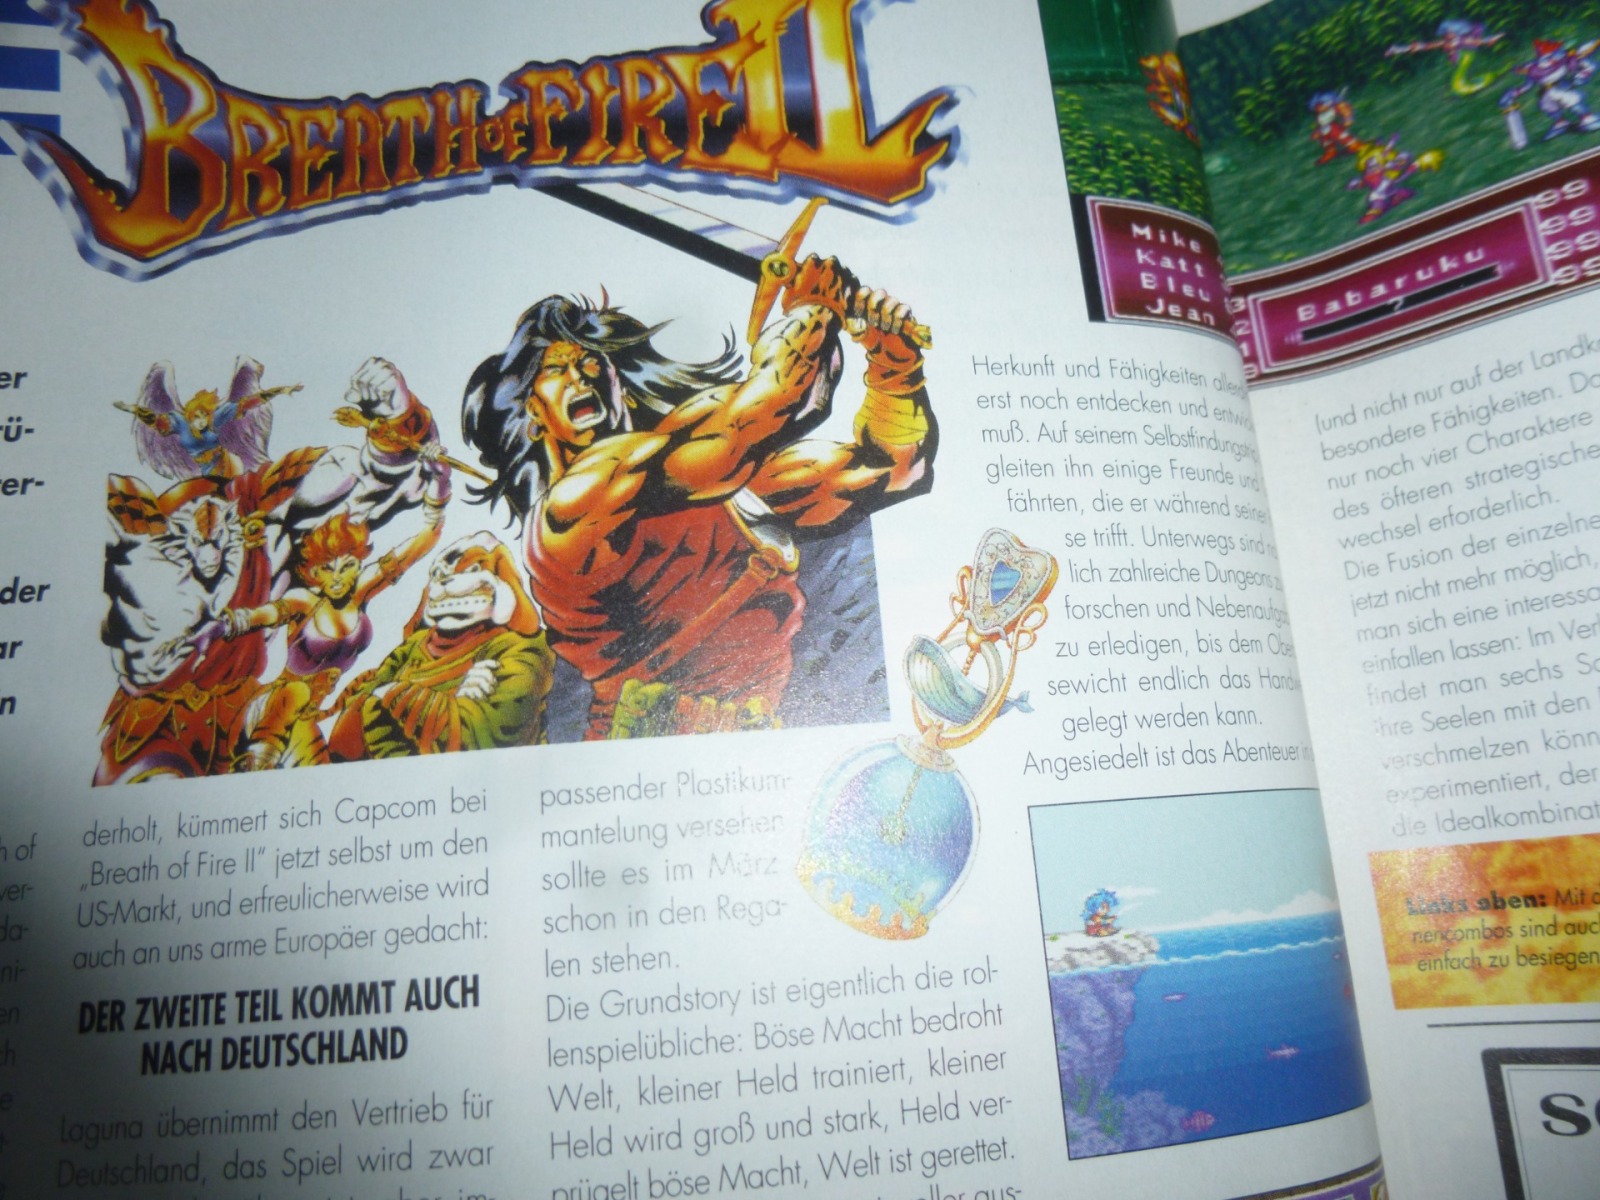 TOTAL Das unabhängige Magazin - 100 Nintendo - Ausgabe 3/96 1996 9